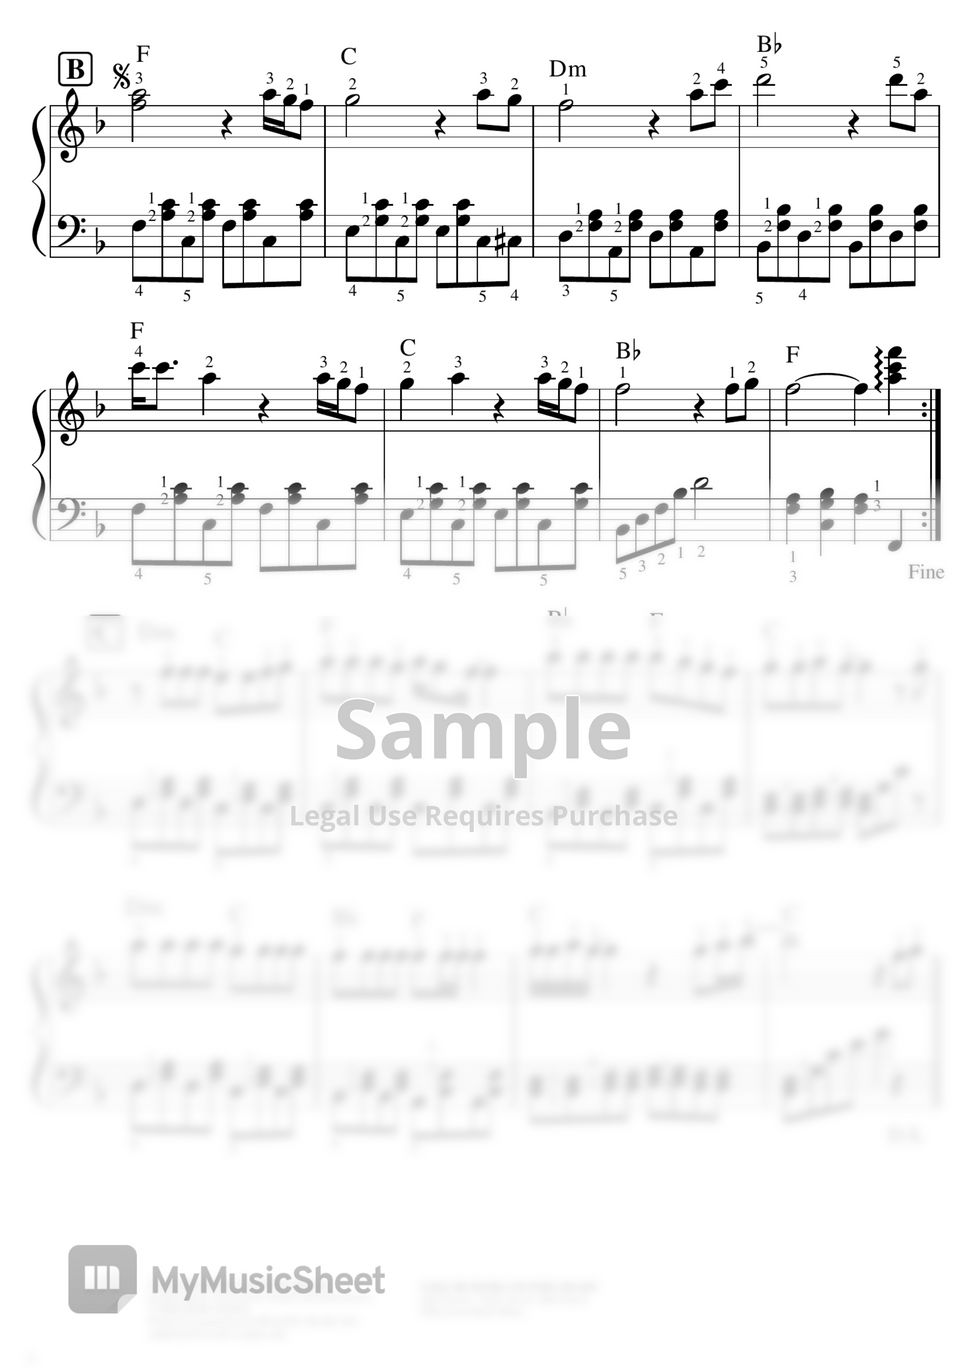 ジョン・デンバー - 【Easy】Country Roads（Studio Ghibli "Whisper Of The Heart"） (耳をすませば,スタジオジブリ) by ピアノのせんせいの楽譜集